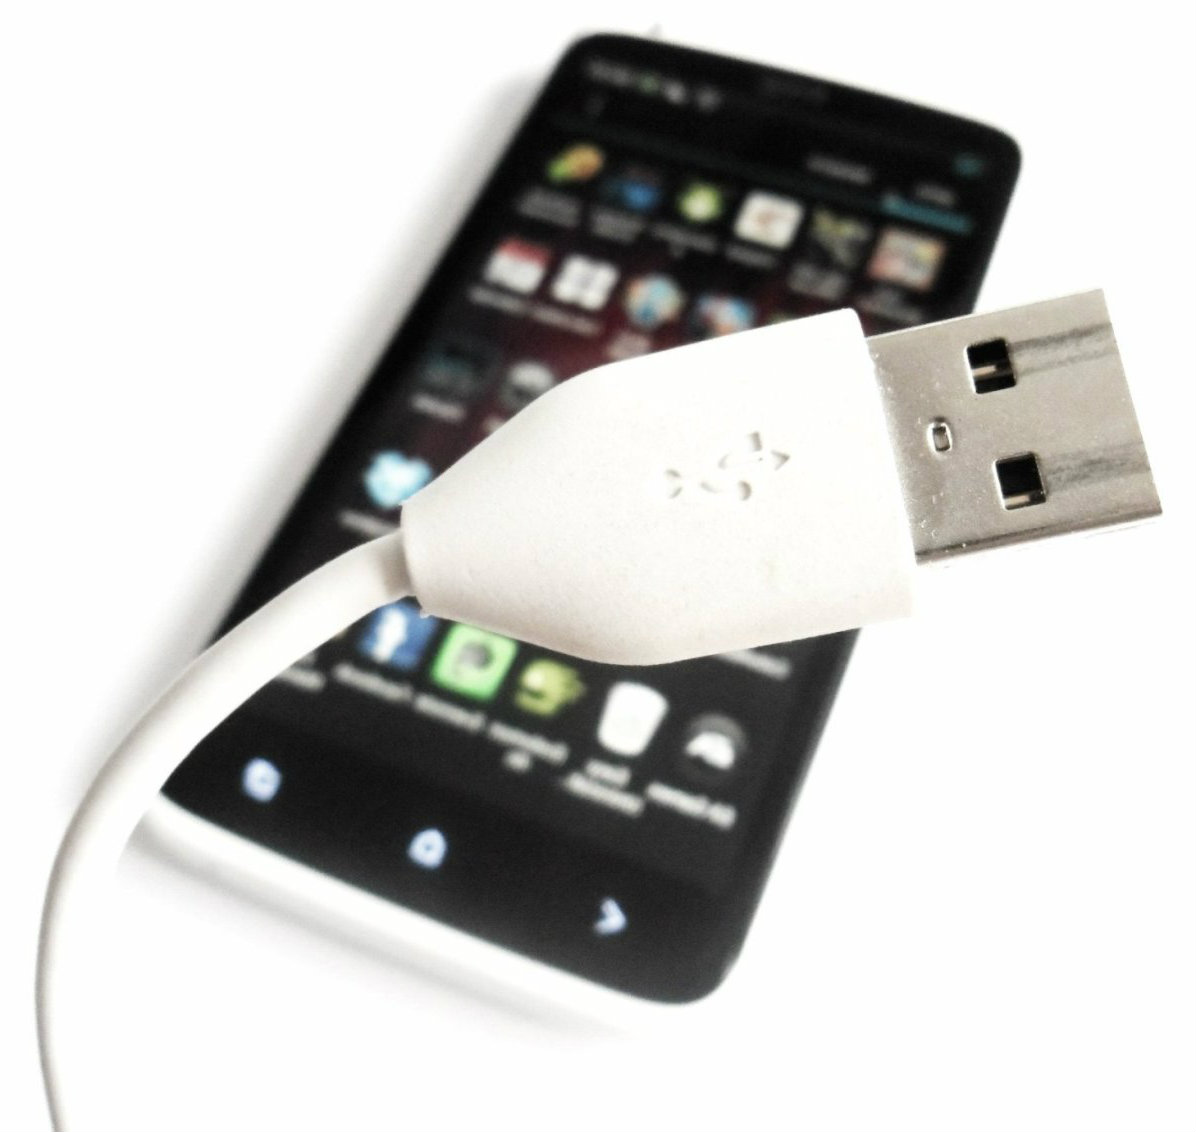 Управление USB на андроид через USB. Планшет заряжается с флешкой.